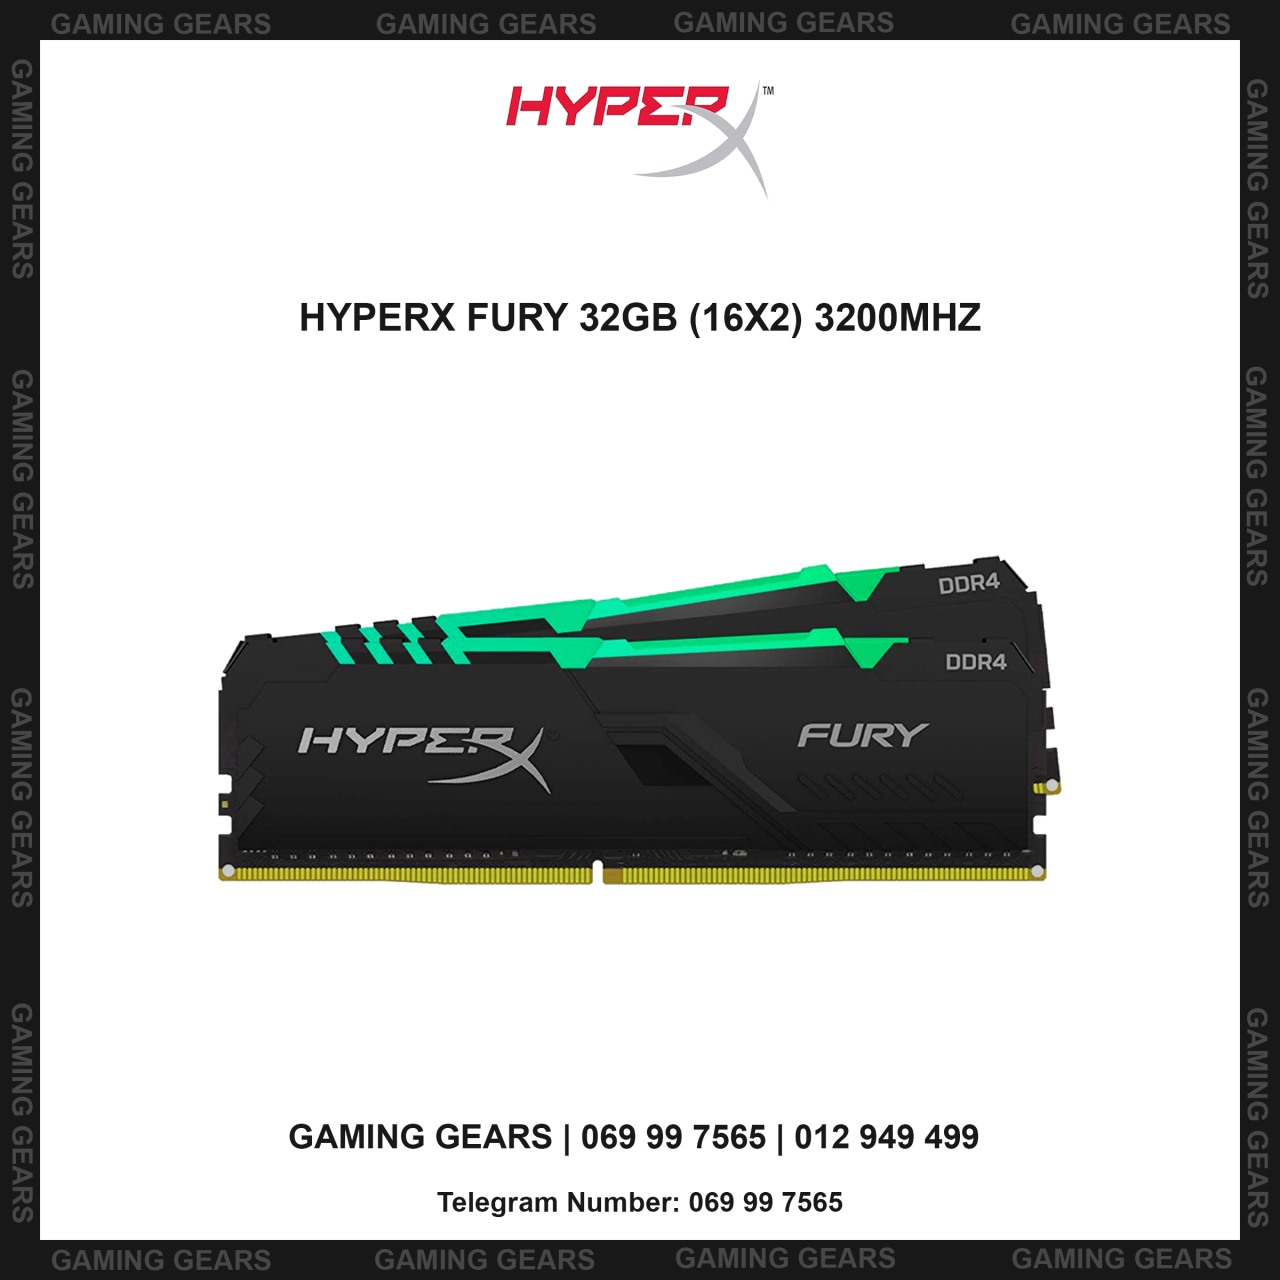 HYPERX FURY 32GB (16X2) 3200MHZ DDR4 CL16